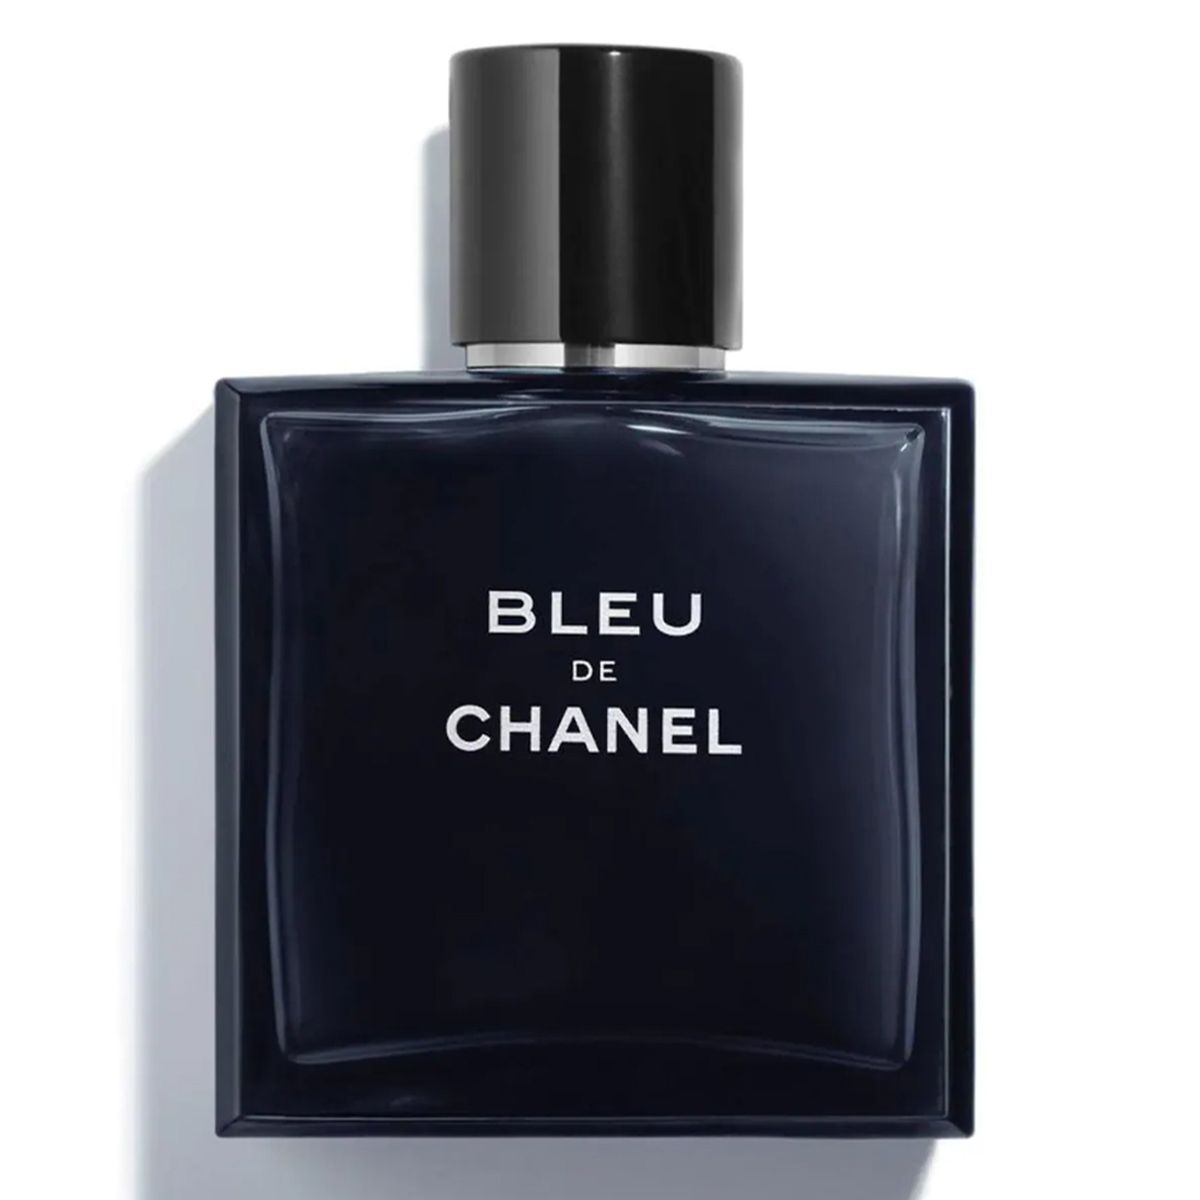  Chanel Bleu de Chanel Eau de Toilette 